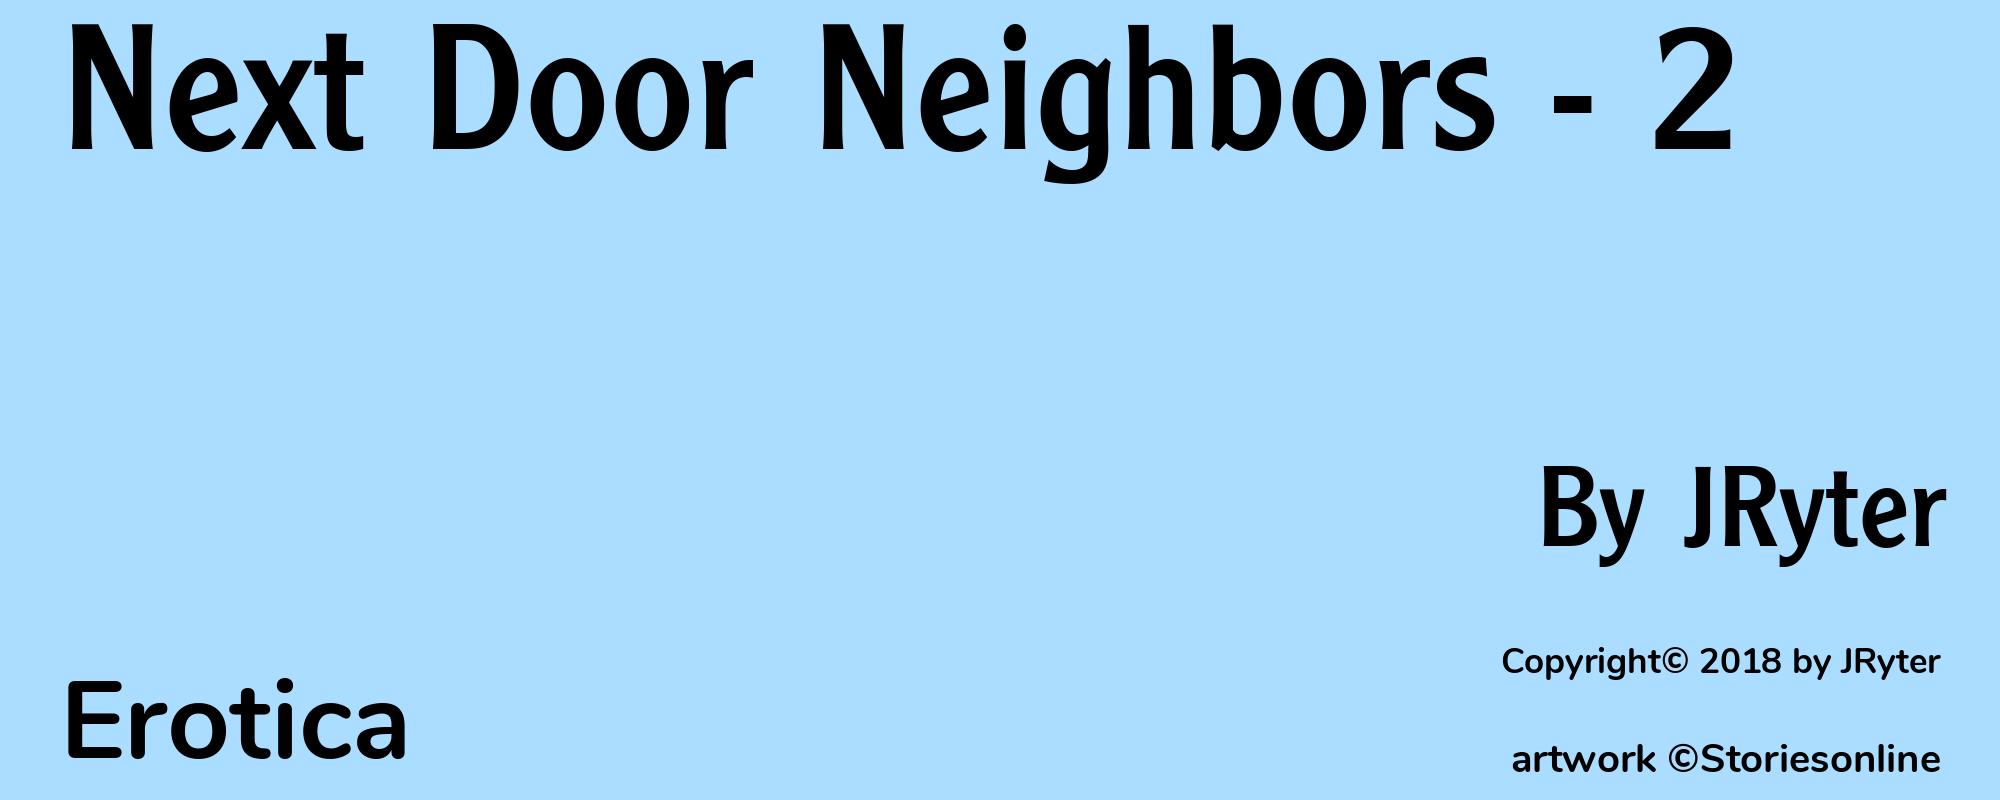 Next Door Neighbors - 2 - Cover